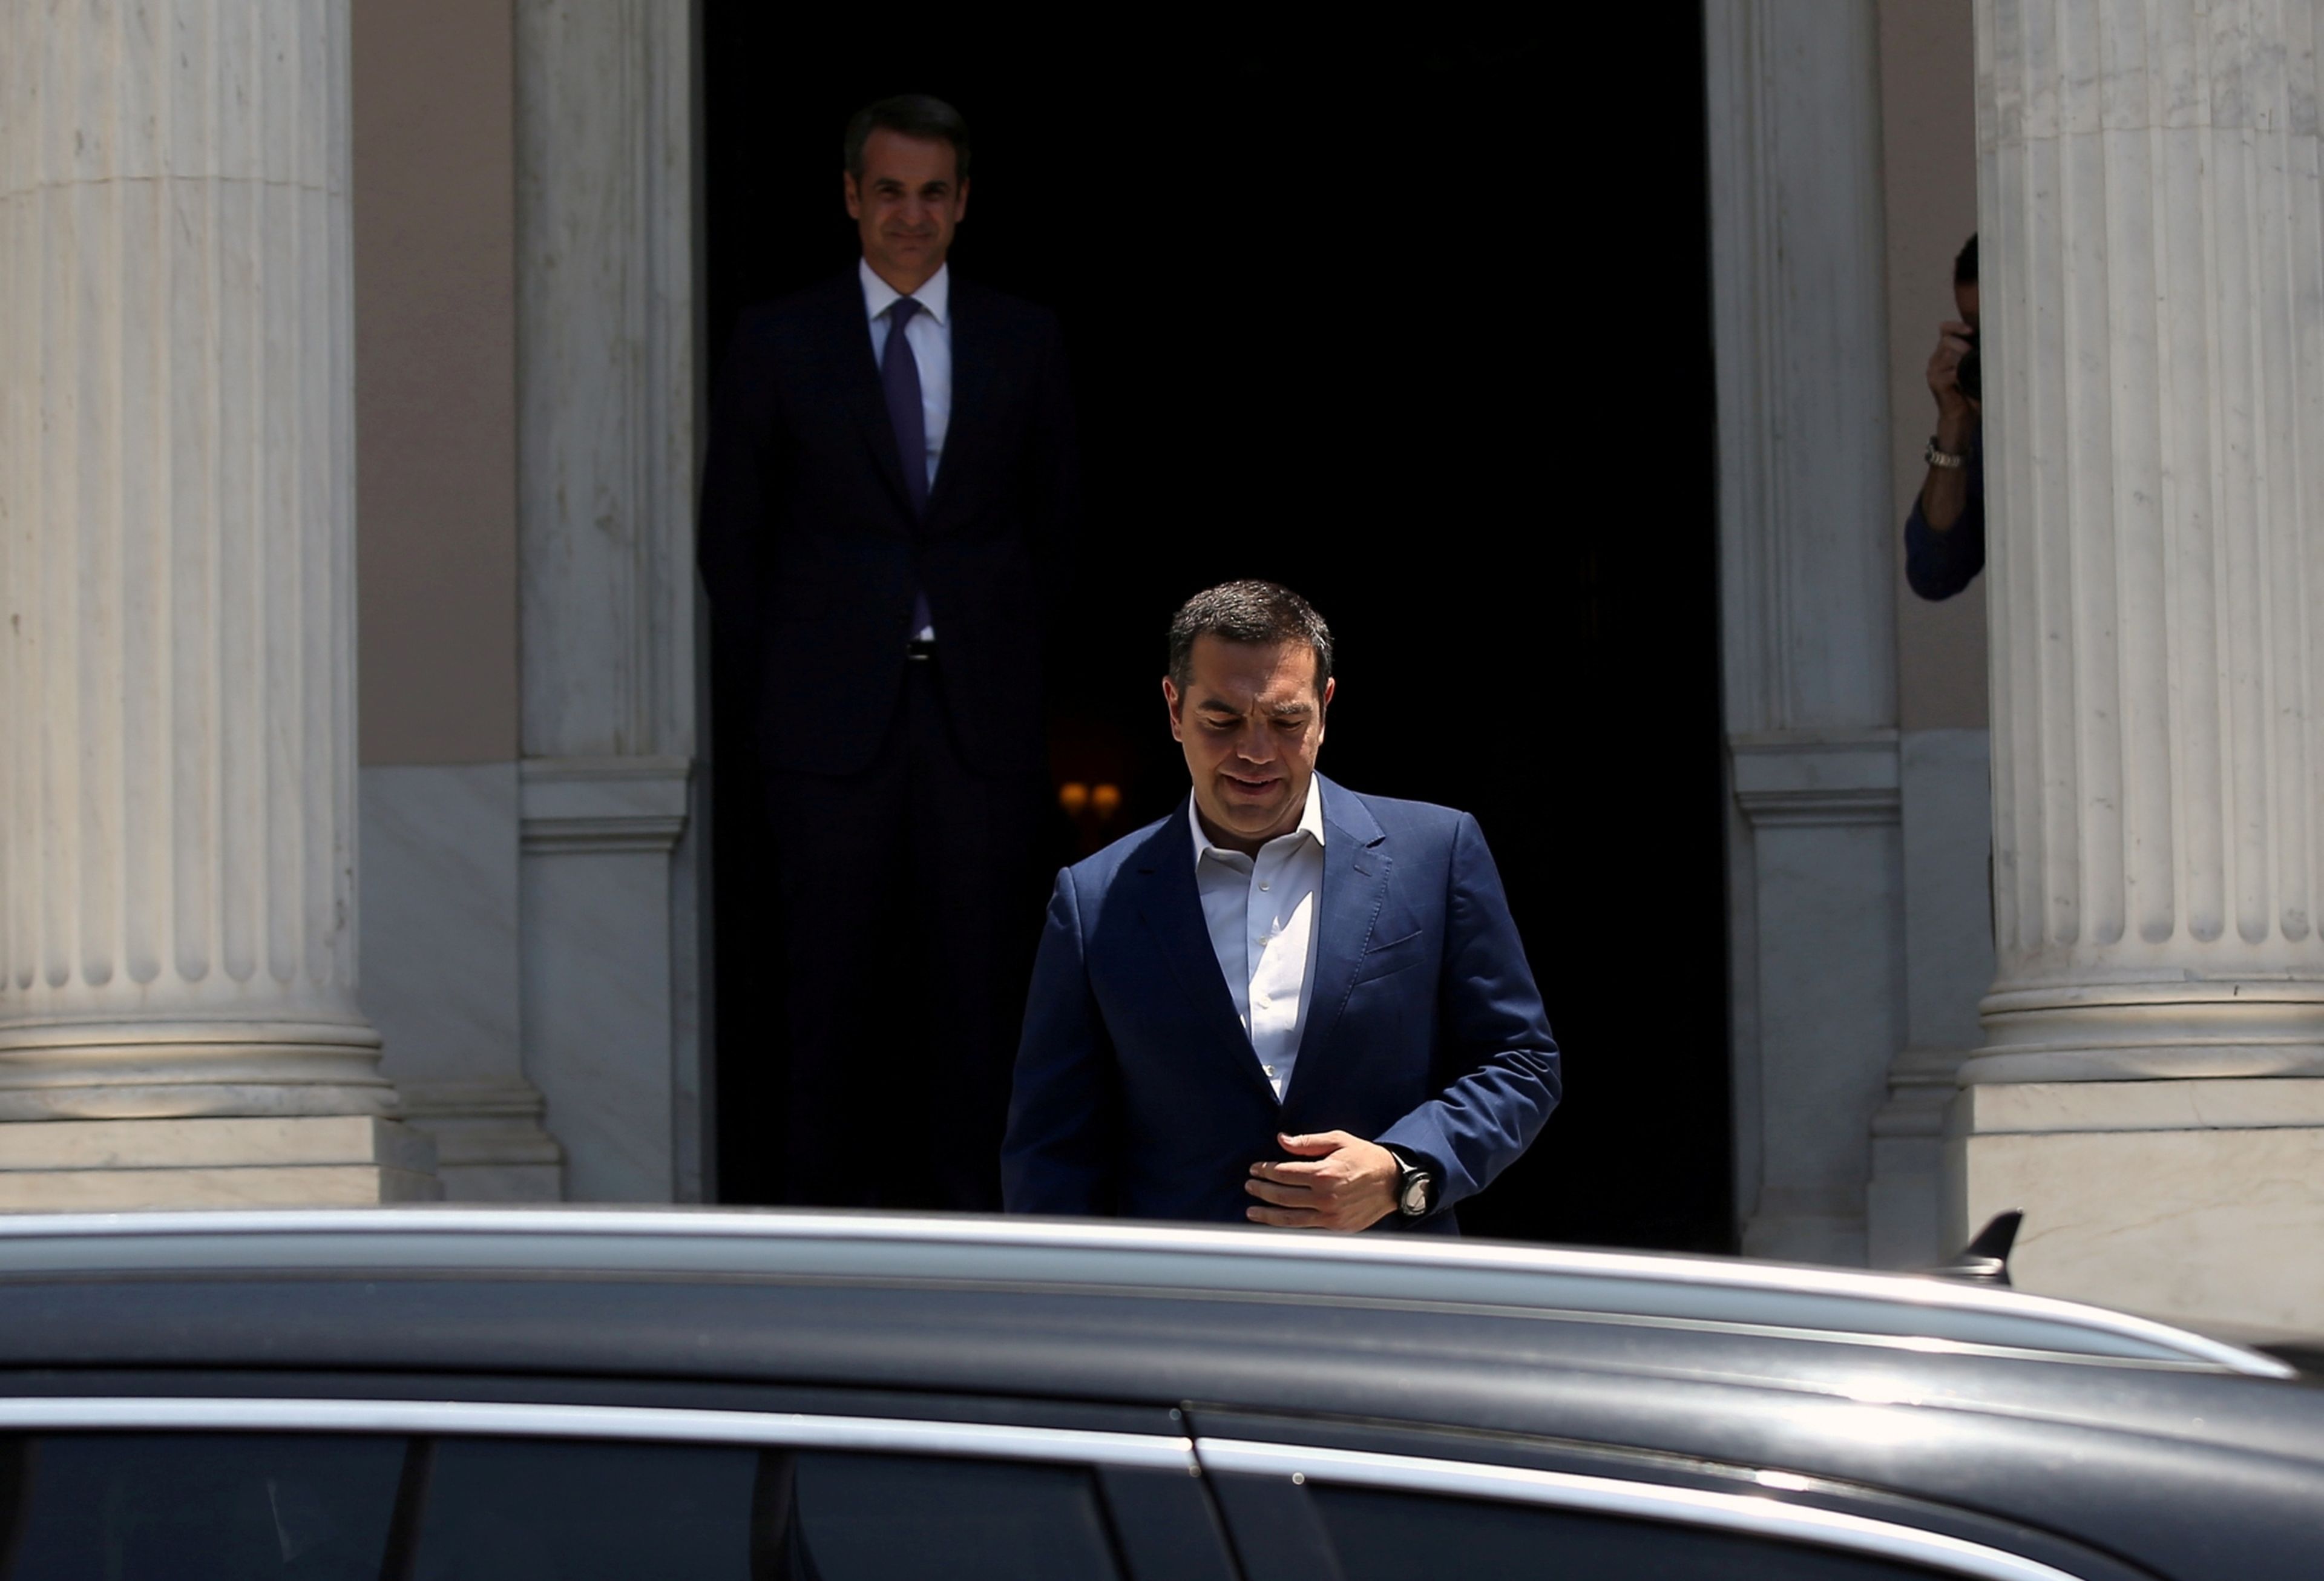 En primer plano, el primer ministro saliente de Grecia, Alexis Tsipras, y de fondo su sucesor, Kyriakos Mitsotakis